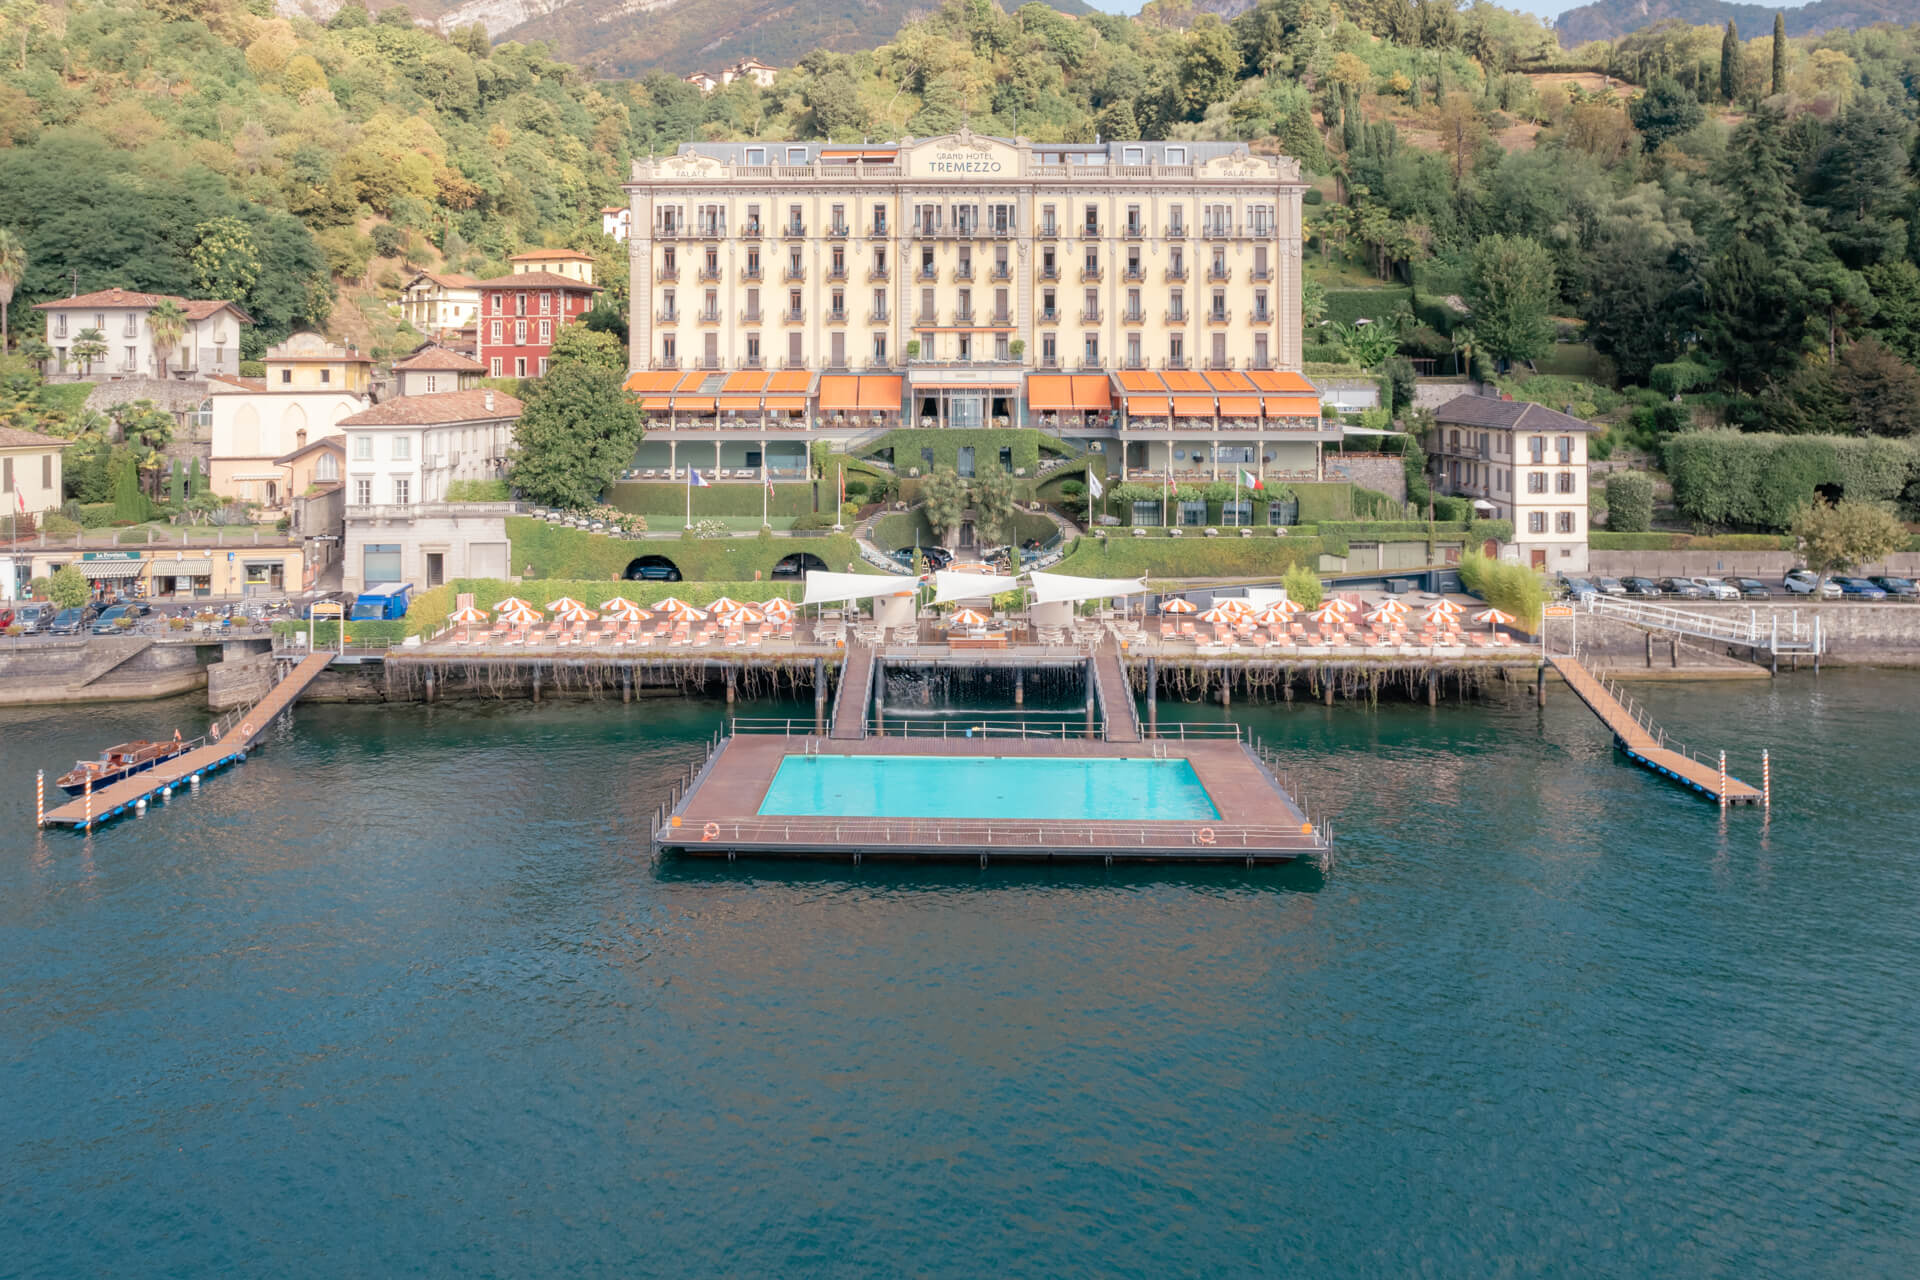 Grand Hotel Tremezzo Como Lake location